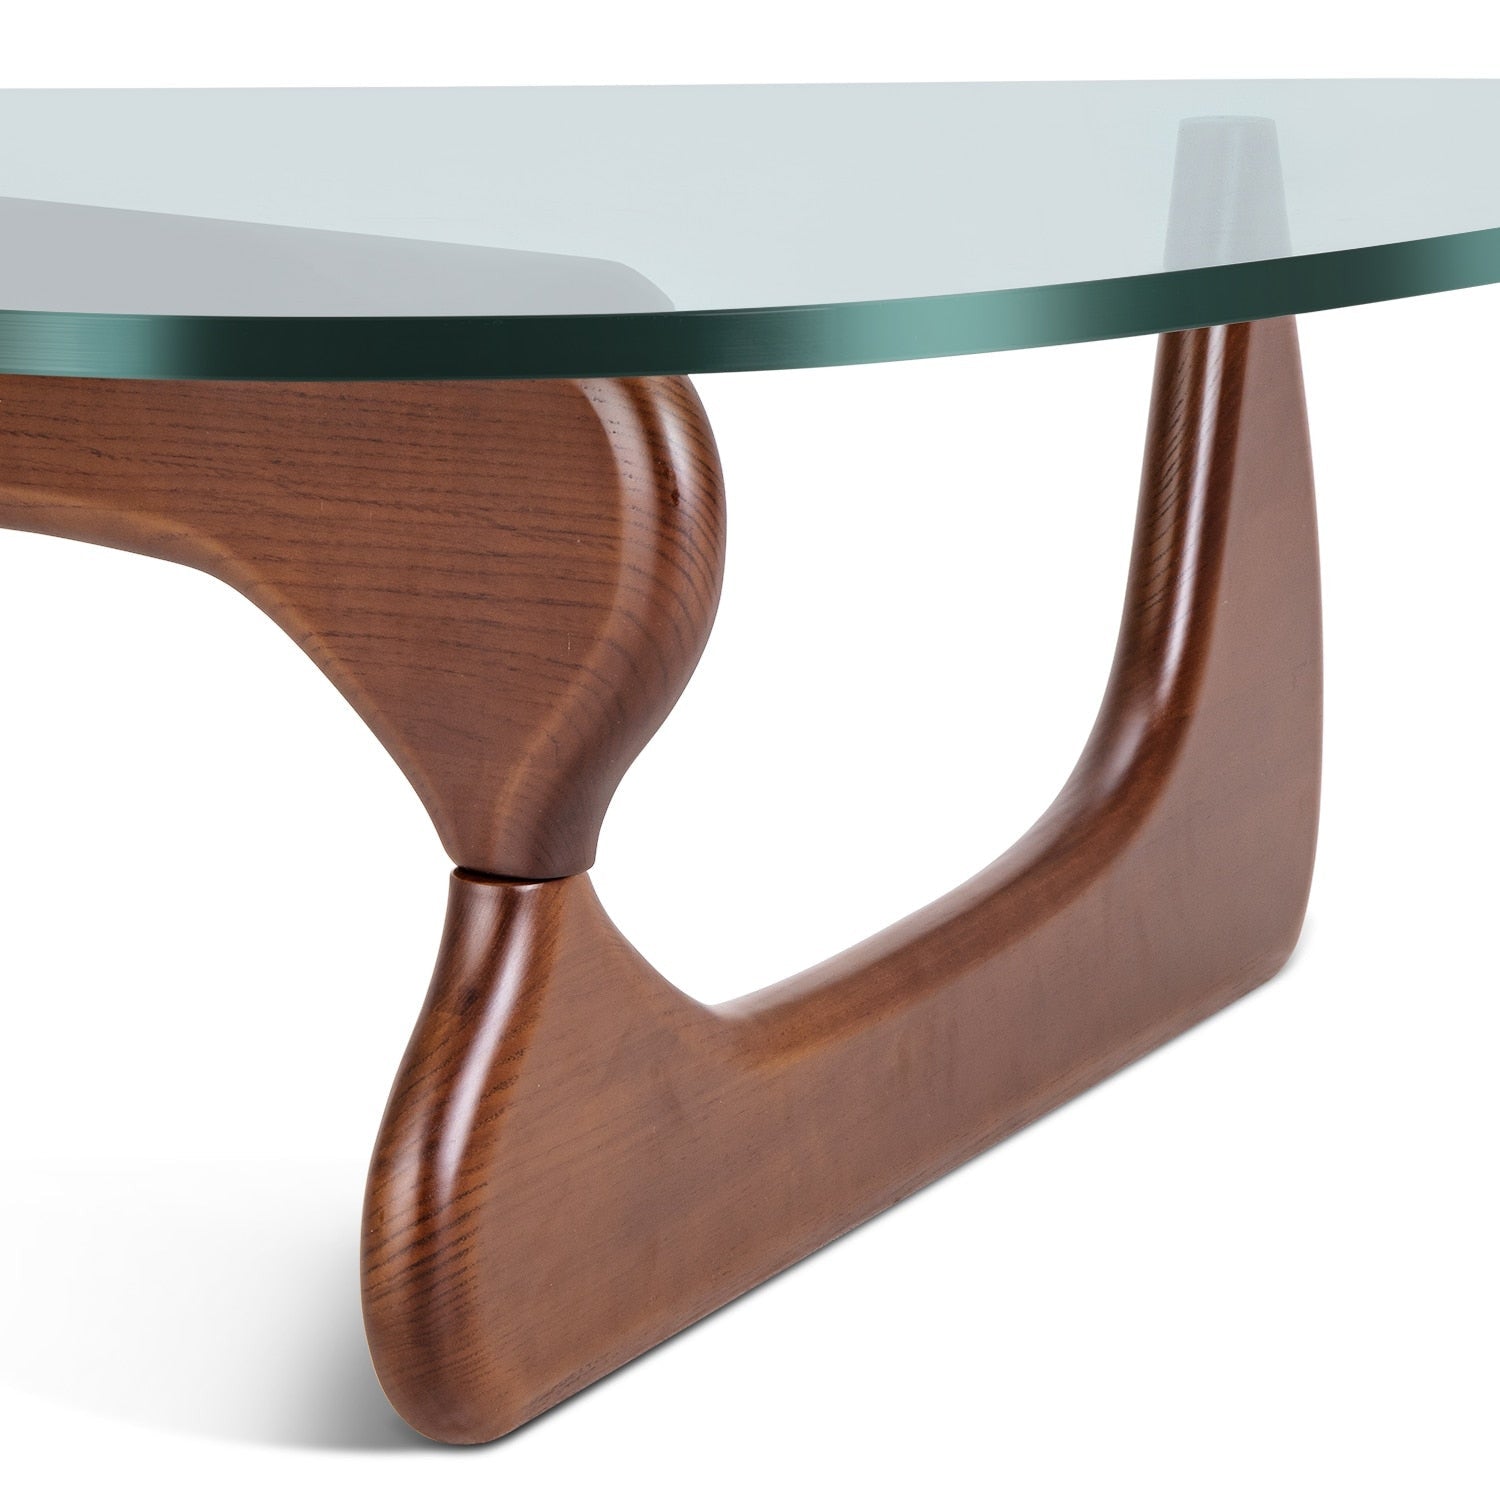 ArtZ® Nordic Design Coffee Table - ArtZMiami